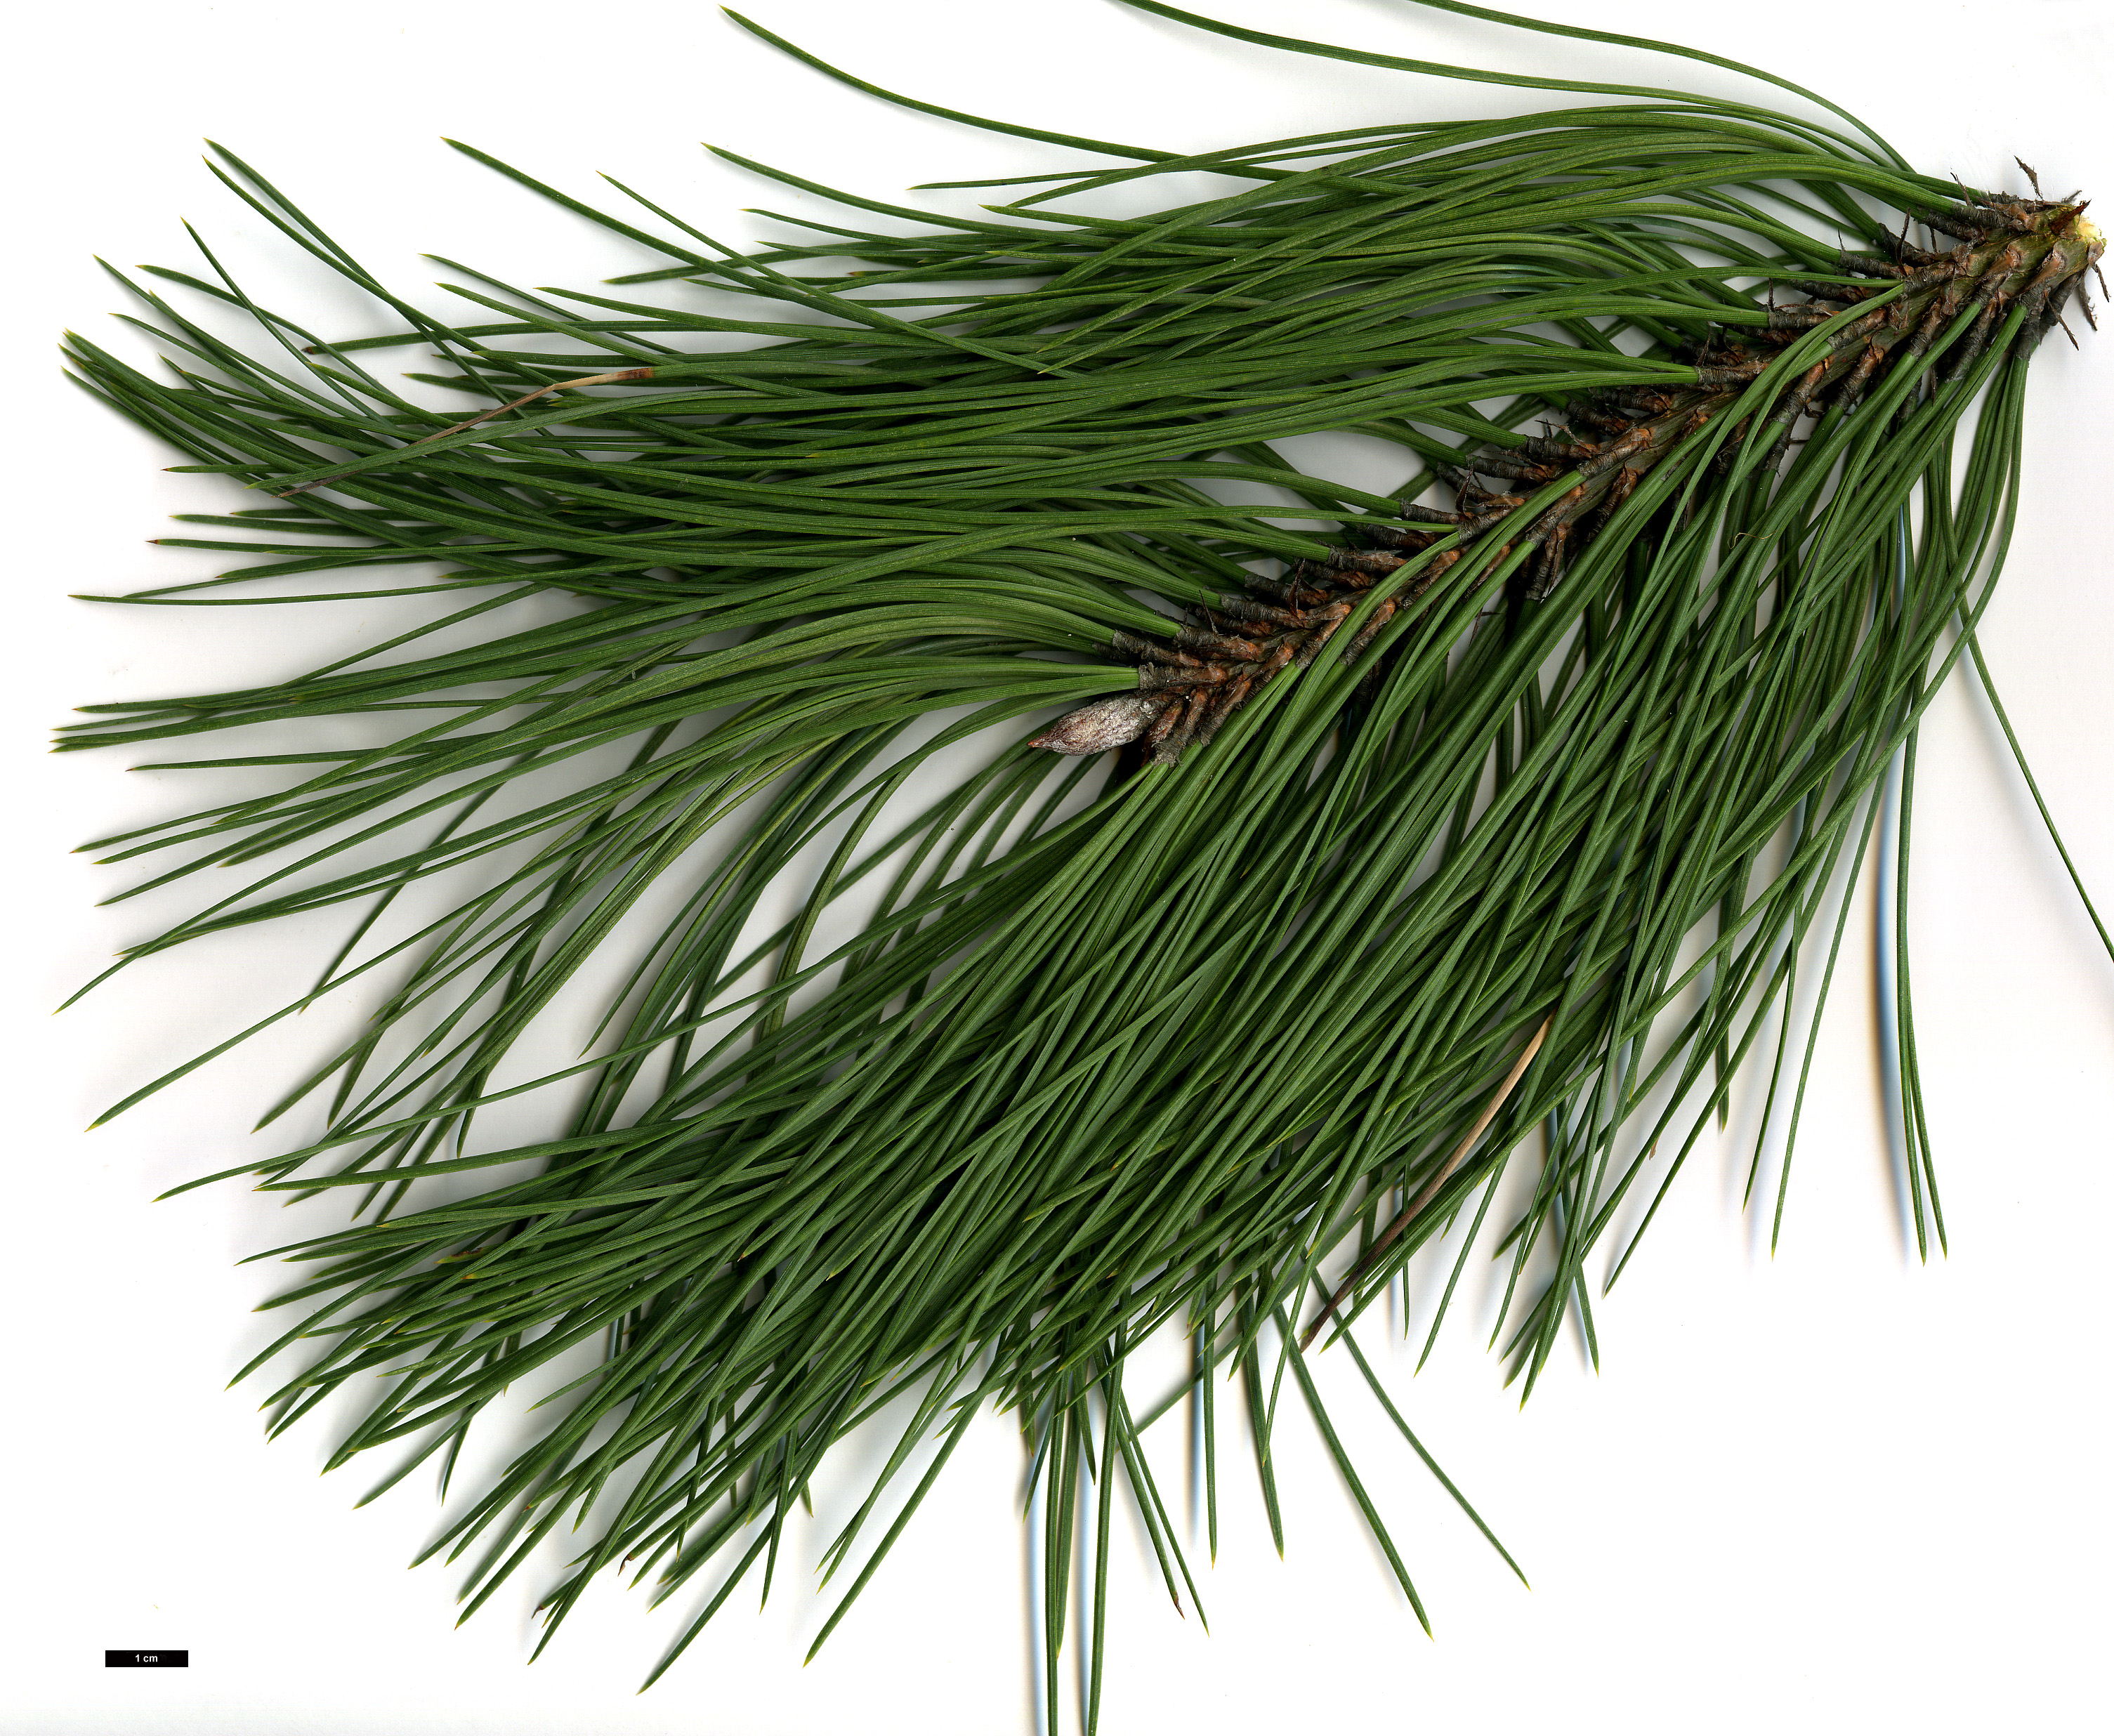 High resolution image: Family: Pinaceae - Genus: Pinus - Taxon: ponderosa